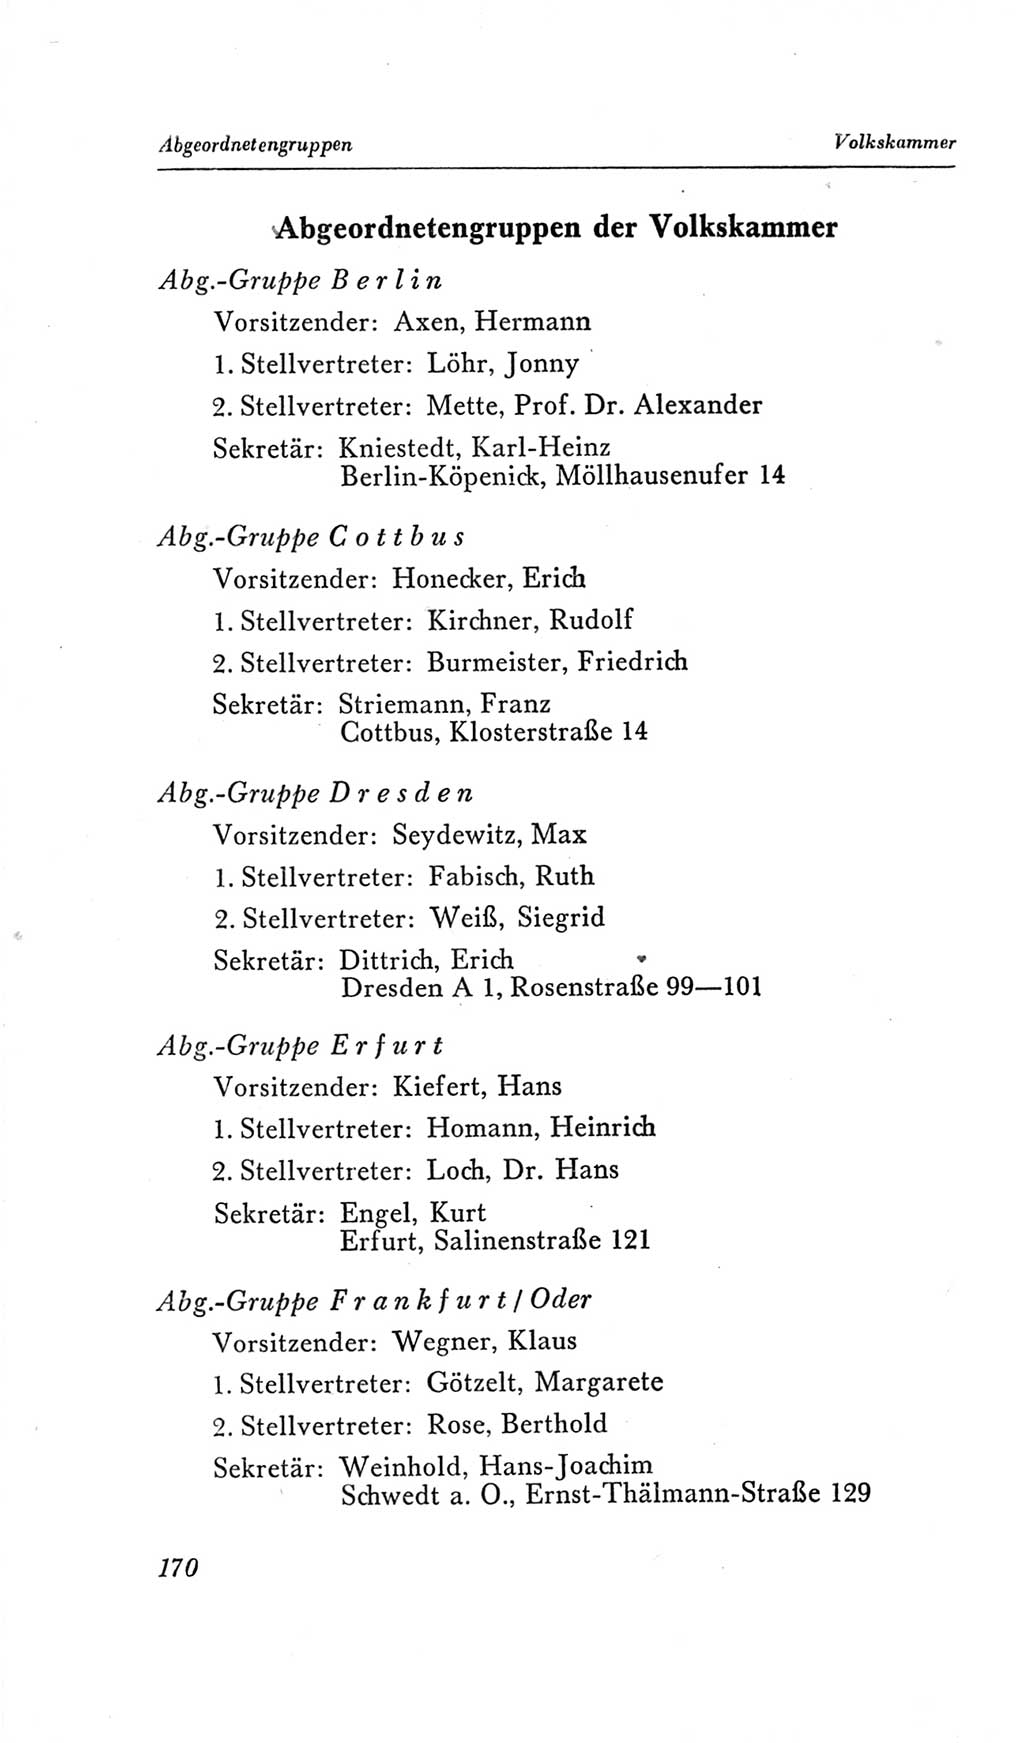 Handbuch der Volkskammer (VK) der Deutschen Demokratischen Republik (DDR), 2. Wahlperiode 1954-1958, Seite 170 (Hdb. VK. DDR, 2. WP. 1954-1958, S. 170)